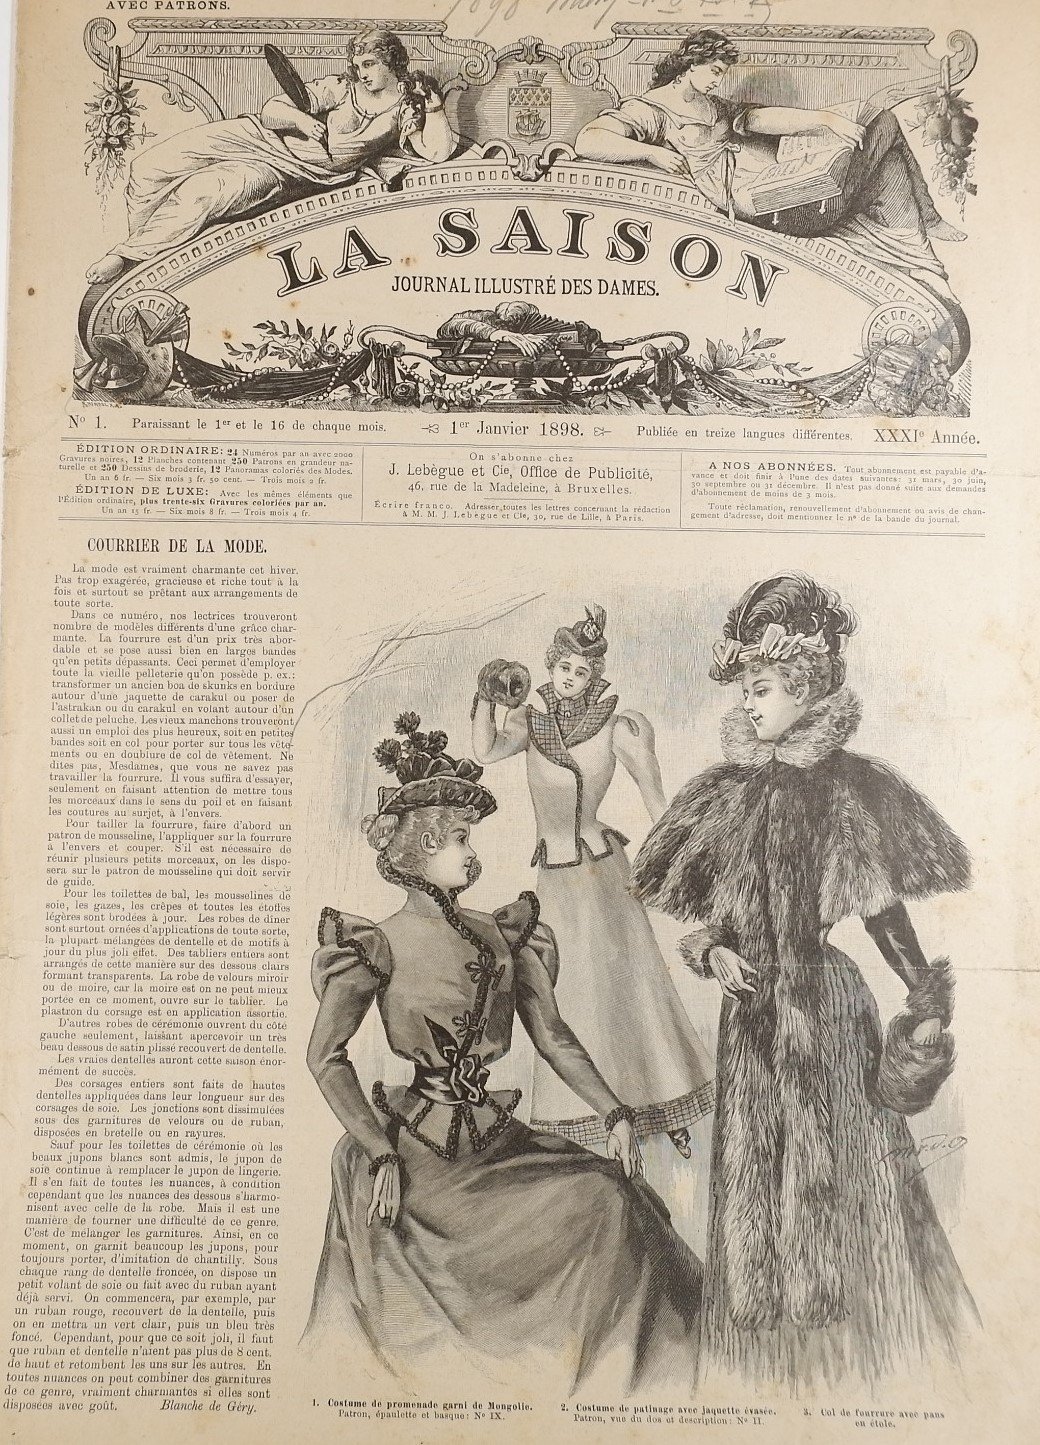 Sammlung: La Saison, Journal illustre`des dames (1898) (Volkskunde- und Freilichtmuseum Roscheider Hof RR-F)